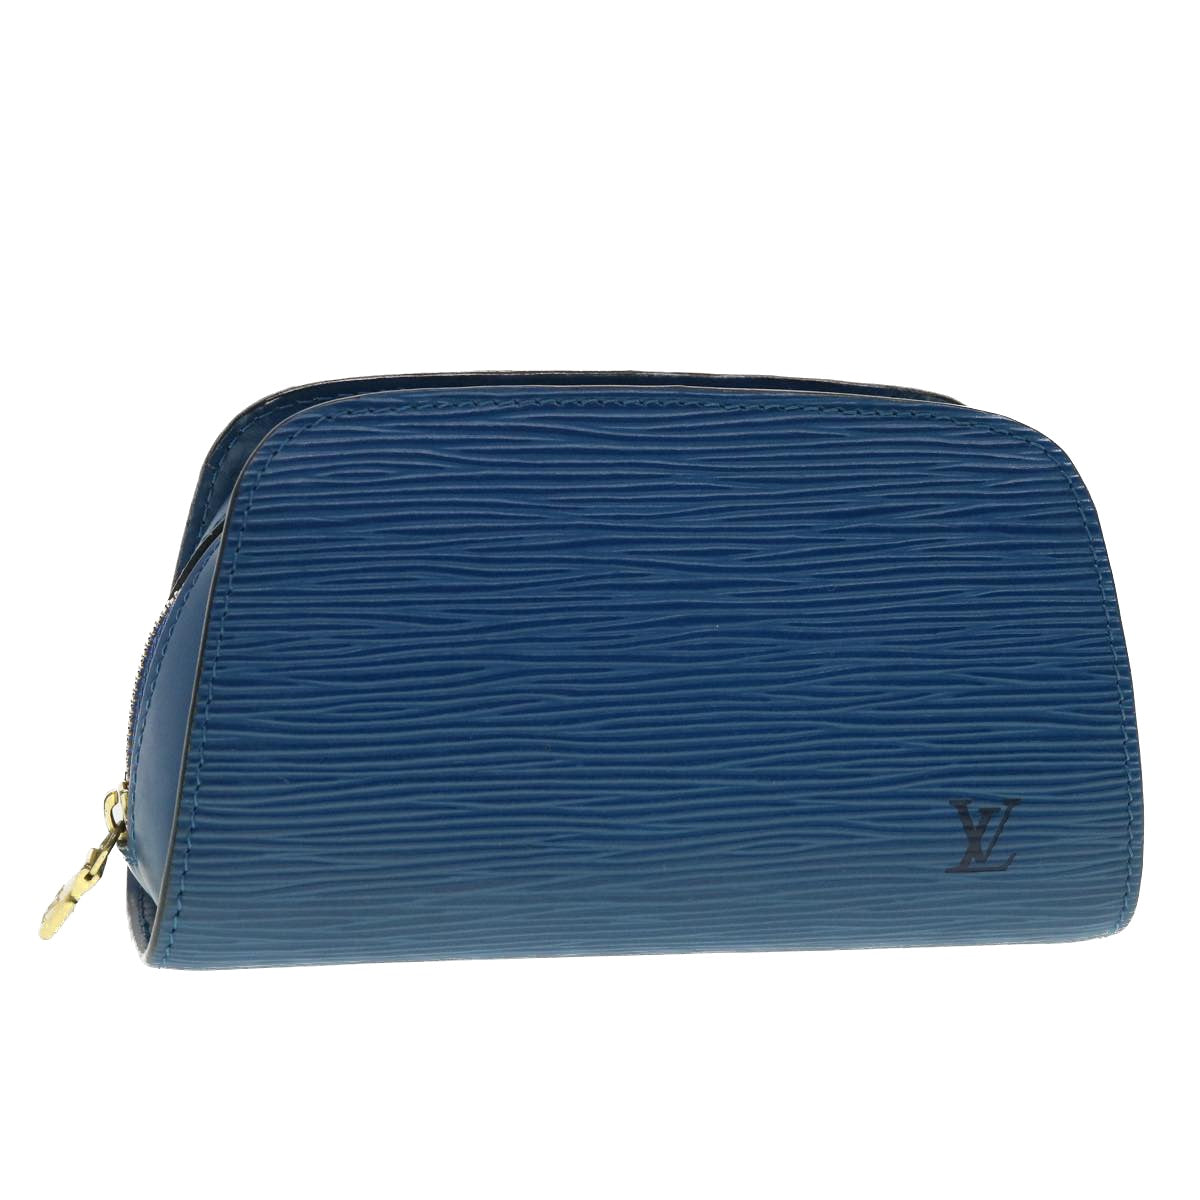 This color only Louis Vuitton (Louis Vitton) Dauphine Shoulder bag